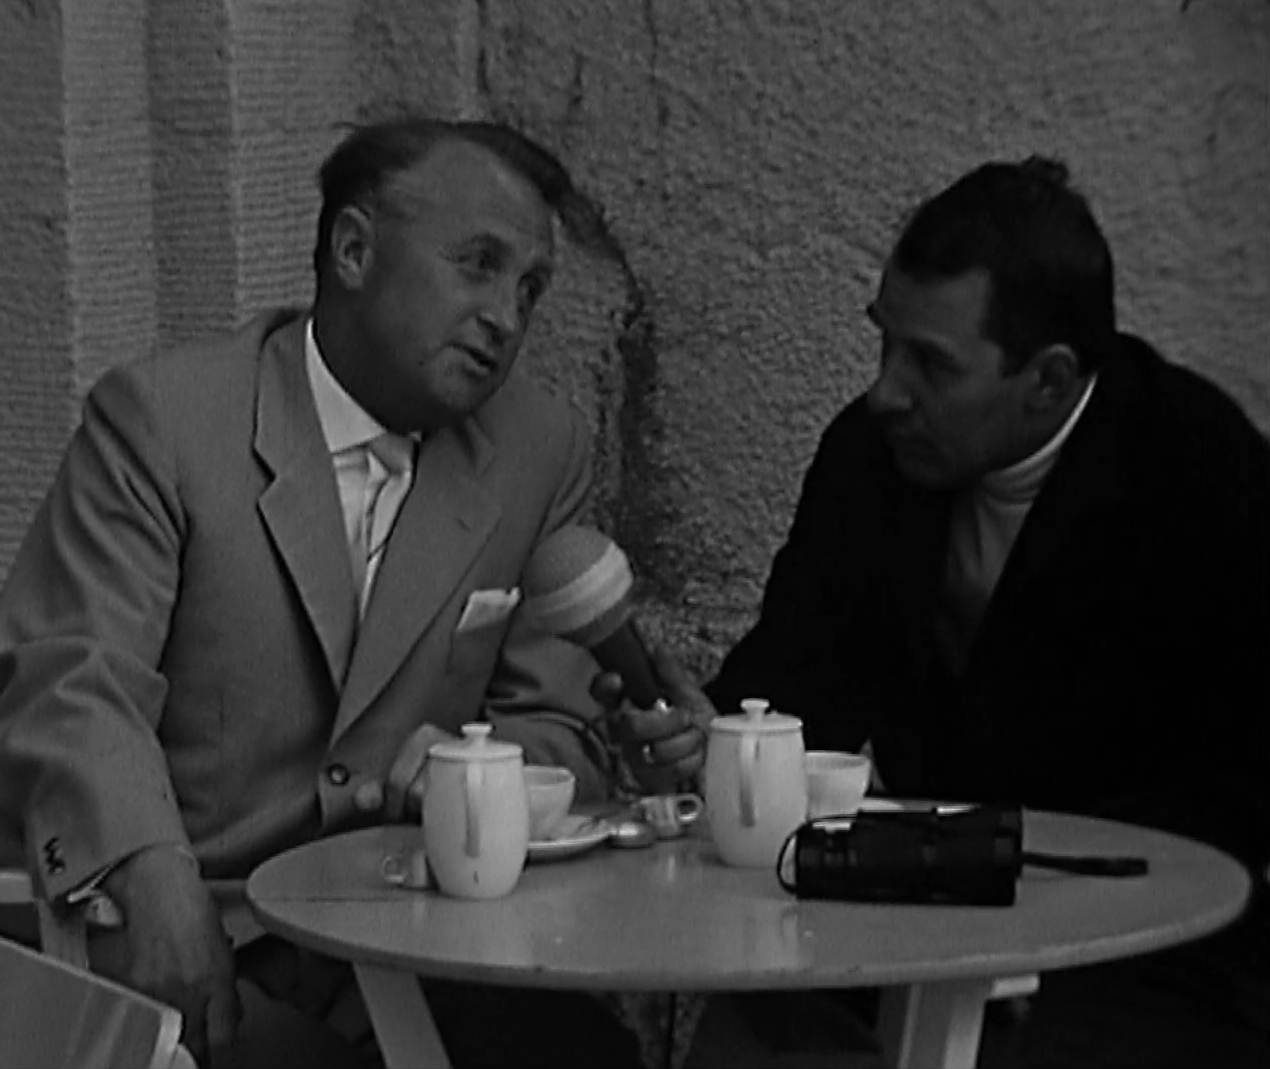 Kur- und Stadtdirektor Theo Speer (l.) im Gespräch mit einem Journalisten des Westdeutschen Rundfunks. Wandelhalle Borkum, September 1962.